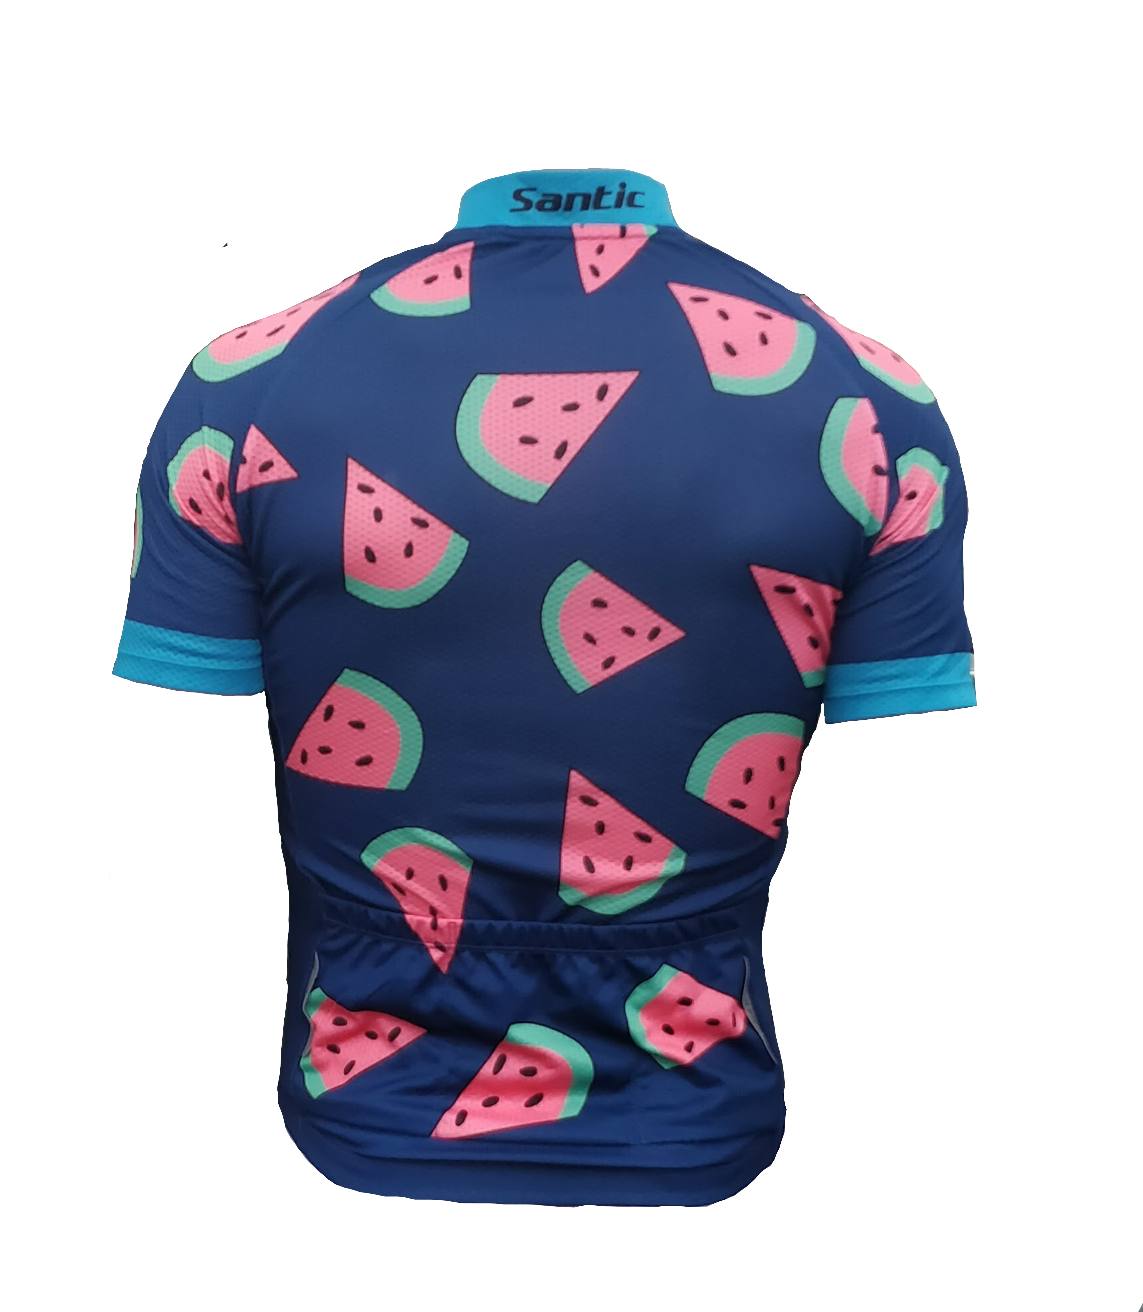 watermelon cycling jersey